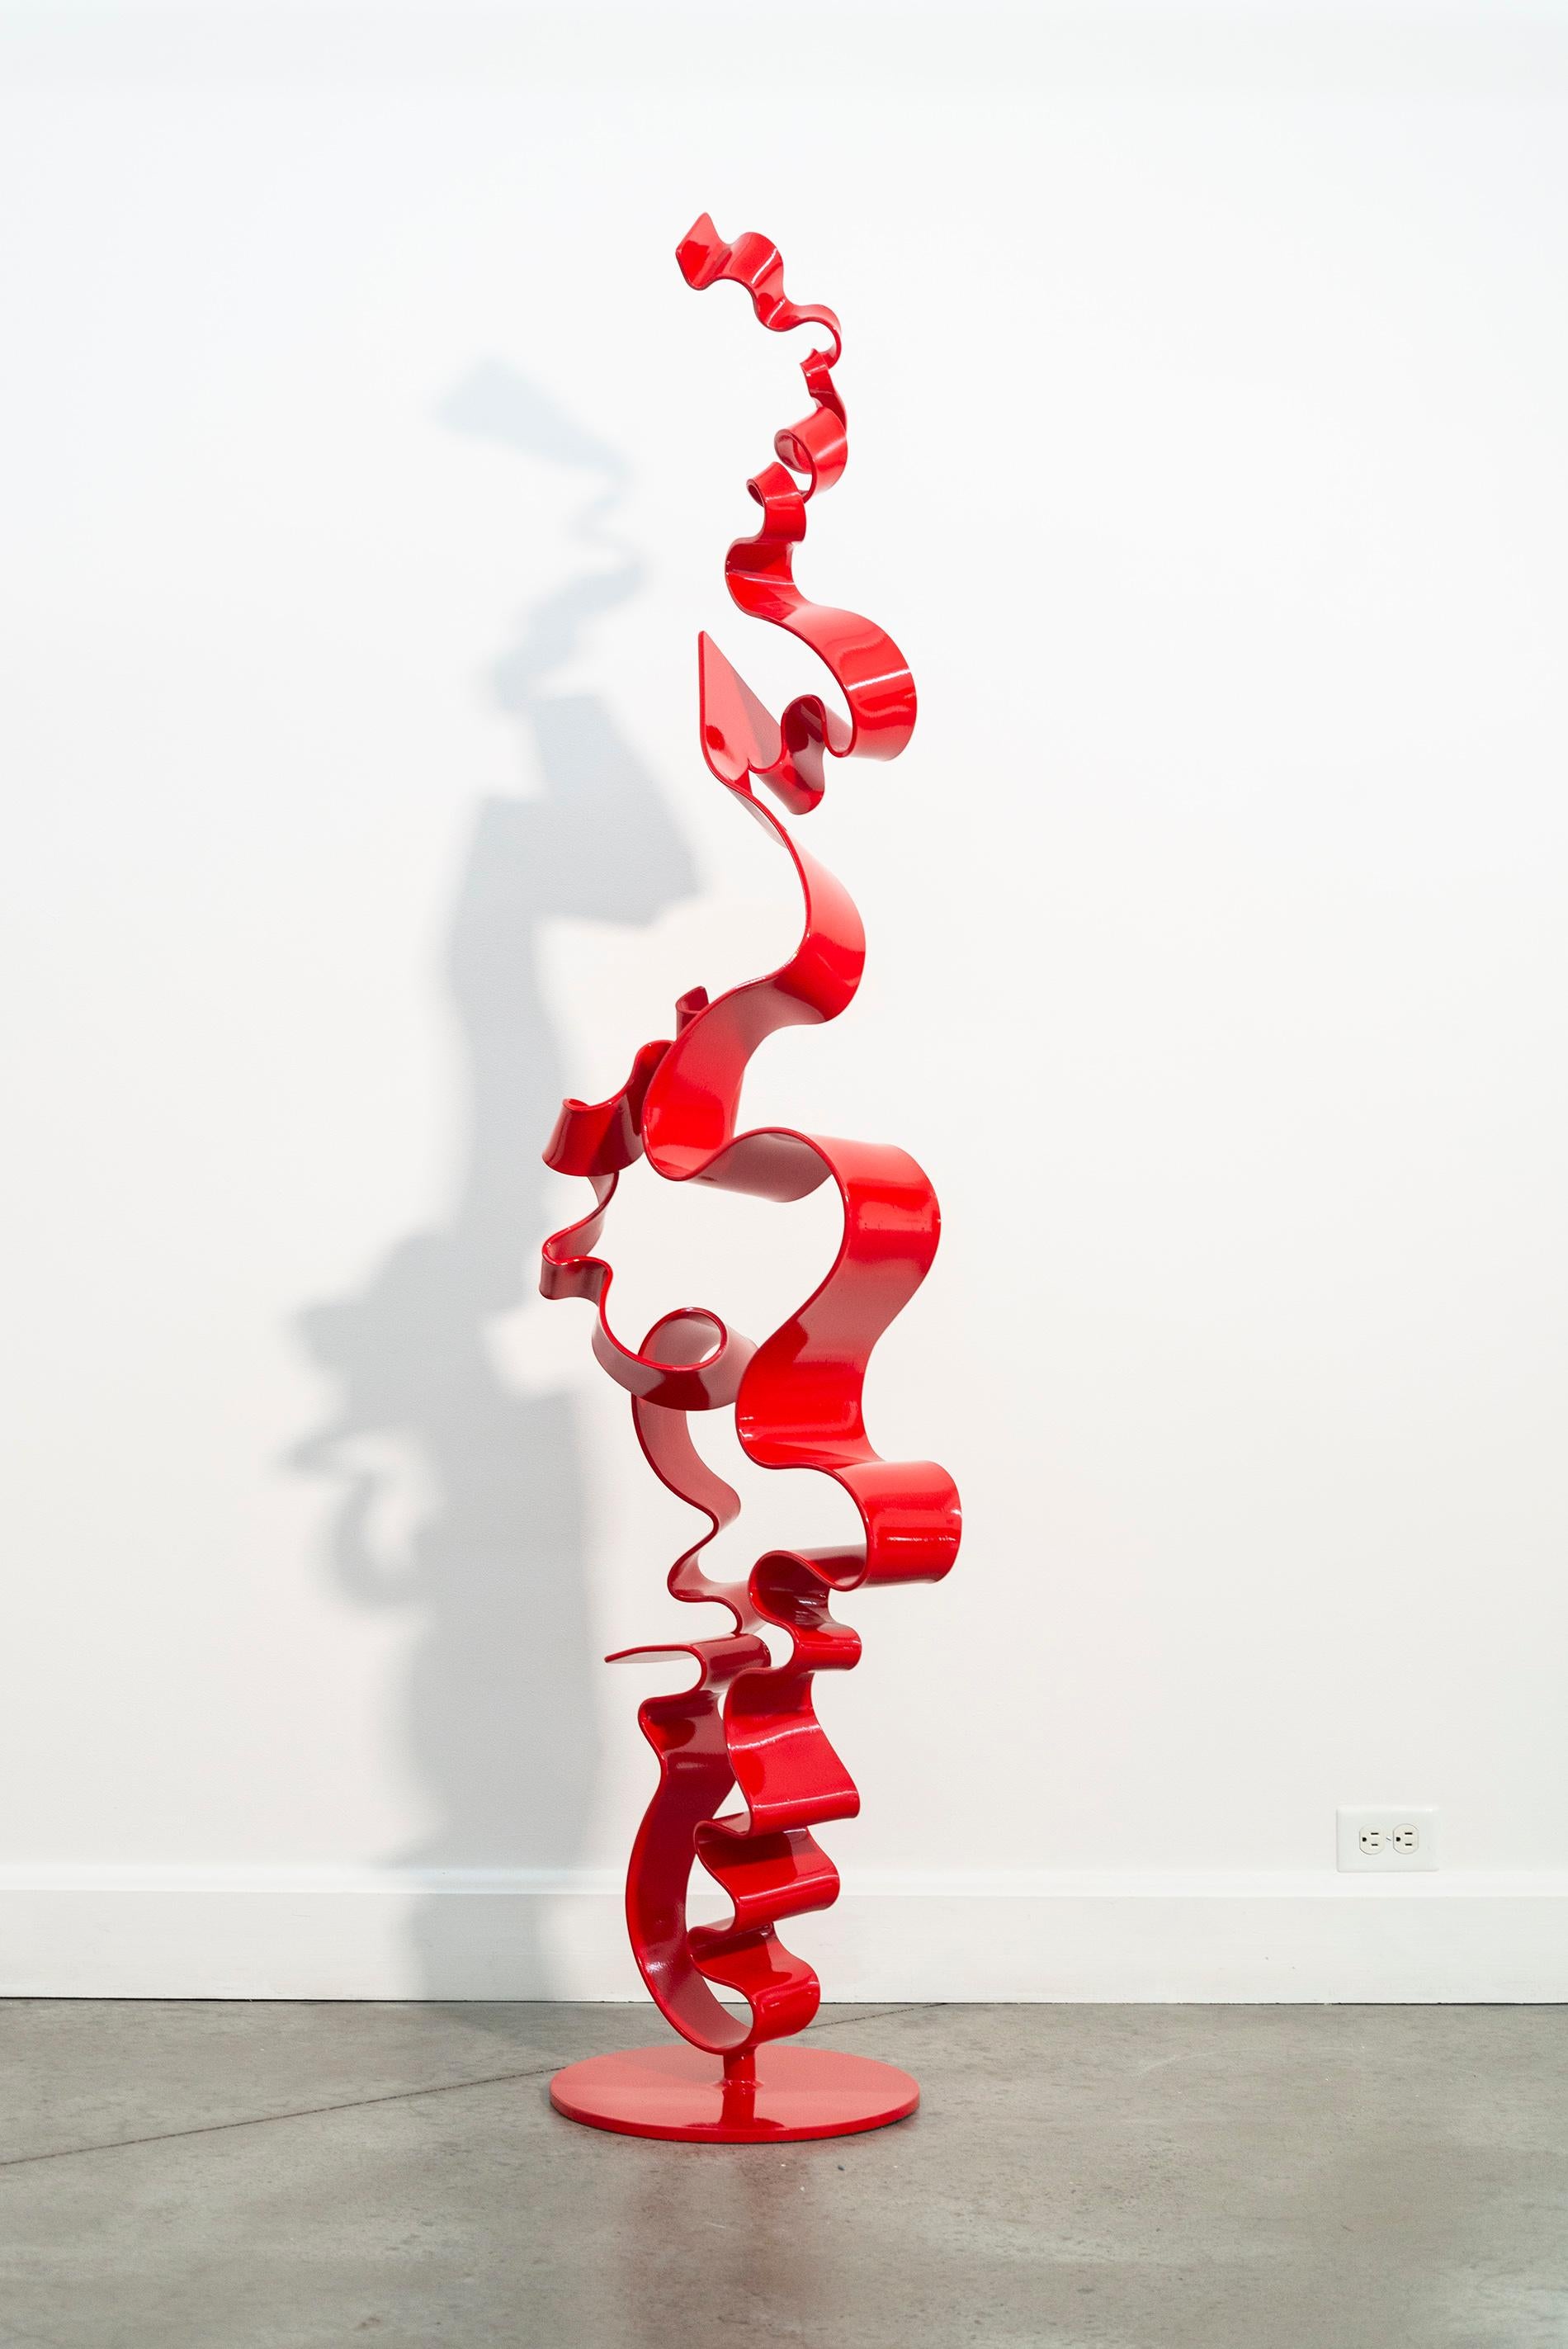 Les élégantes sculptures abstraites de Stefan Duerst se caractérisent par des lignes nettes et fluides et des formes minimales forgées à la main dans l'acier. Cette pièce est un 